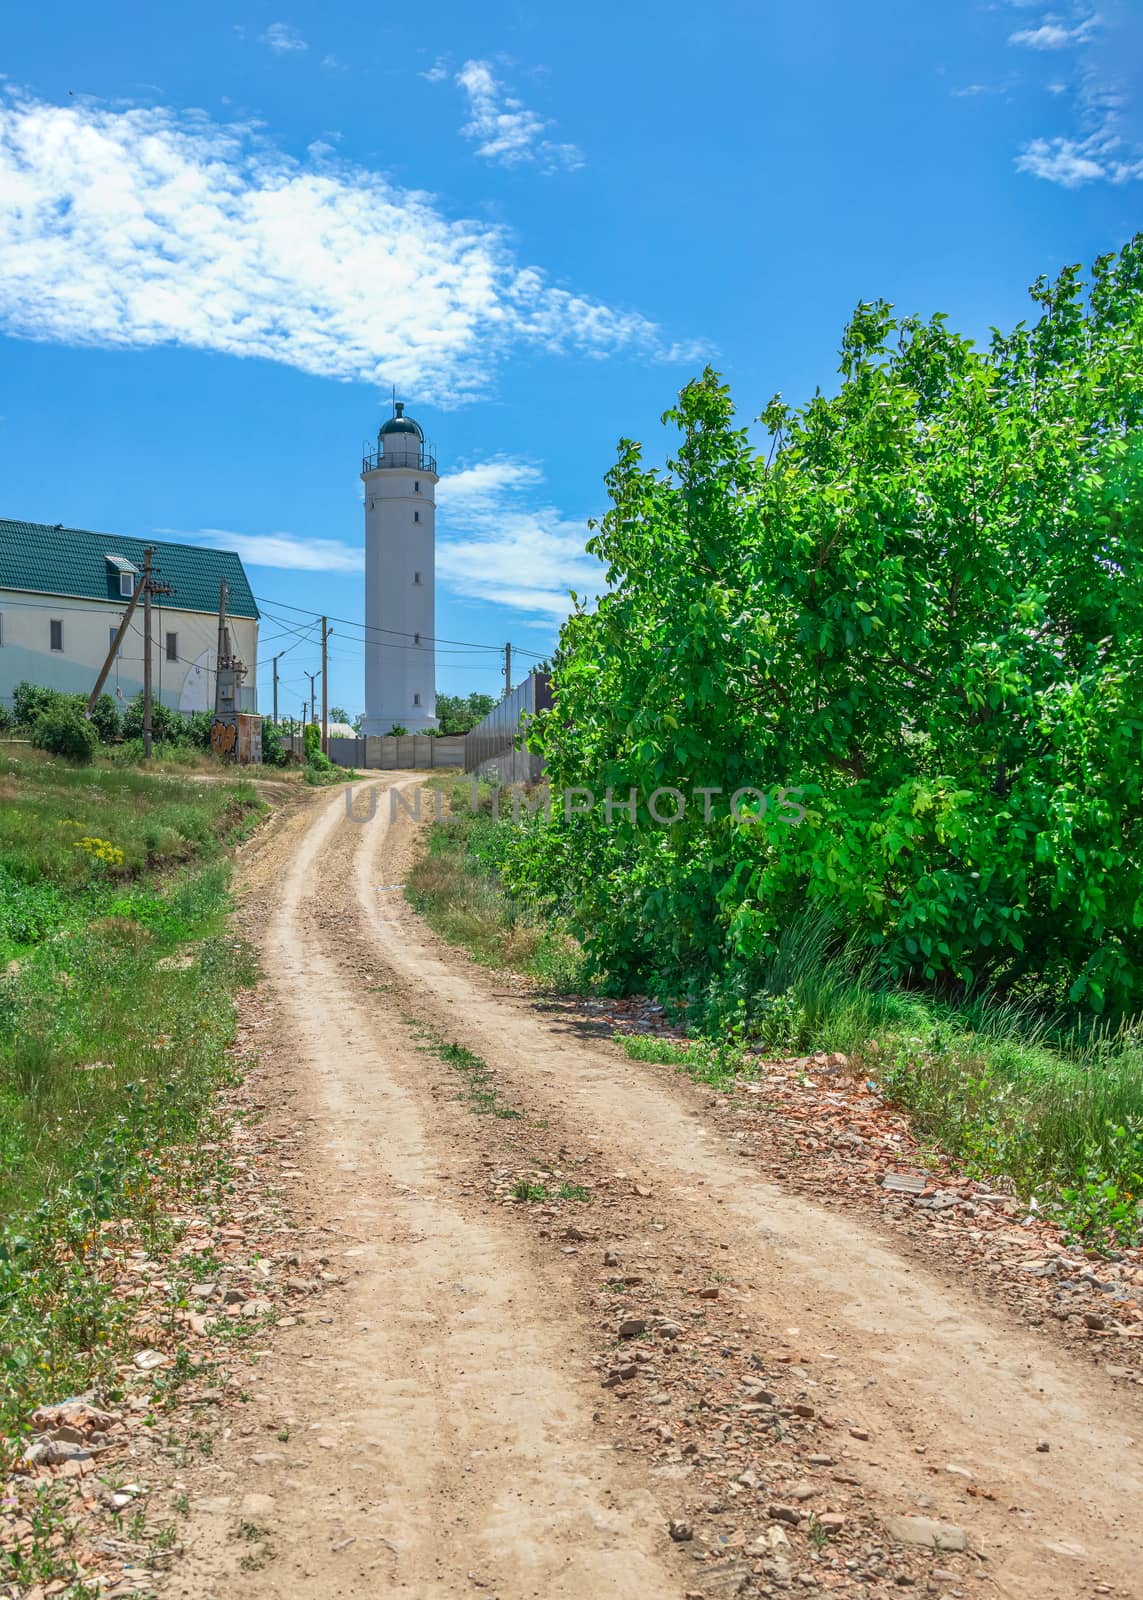 Lighthouse in Sanzheyka village, Ukraine by Multipedia